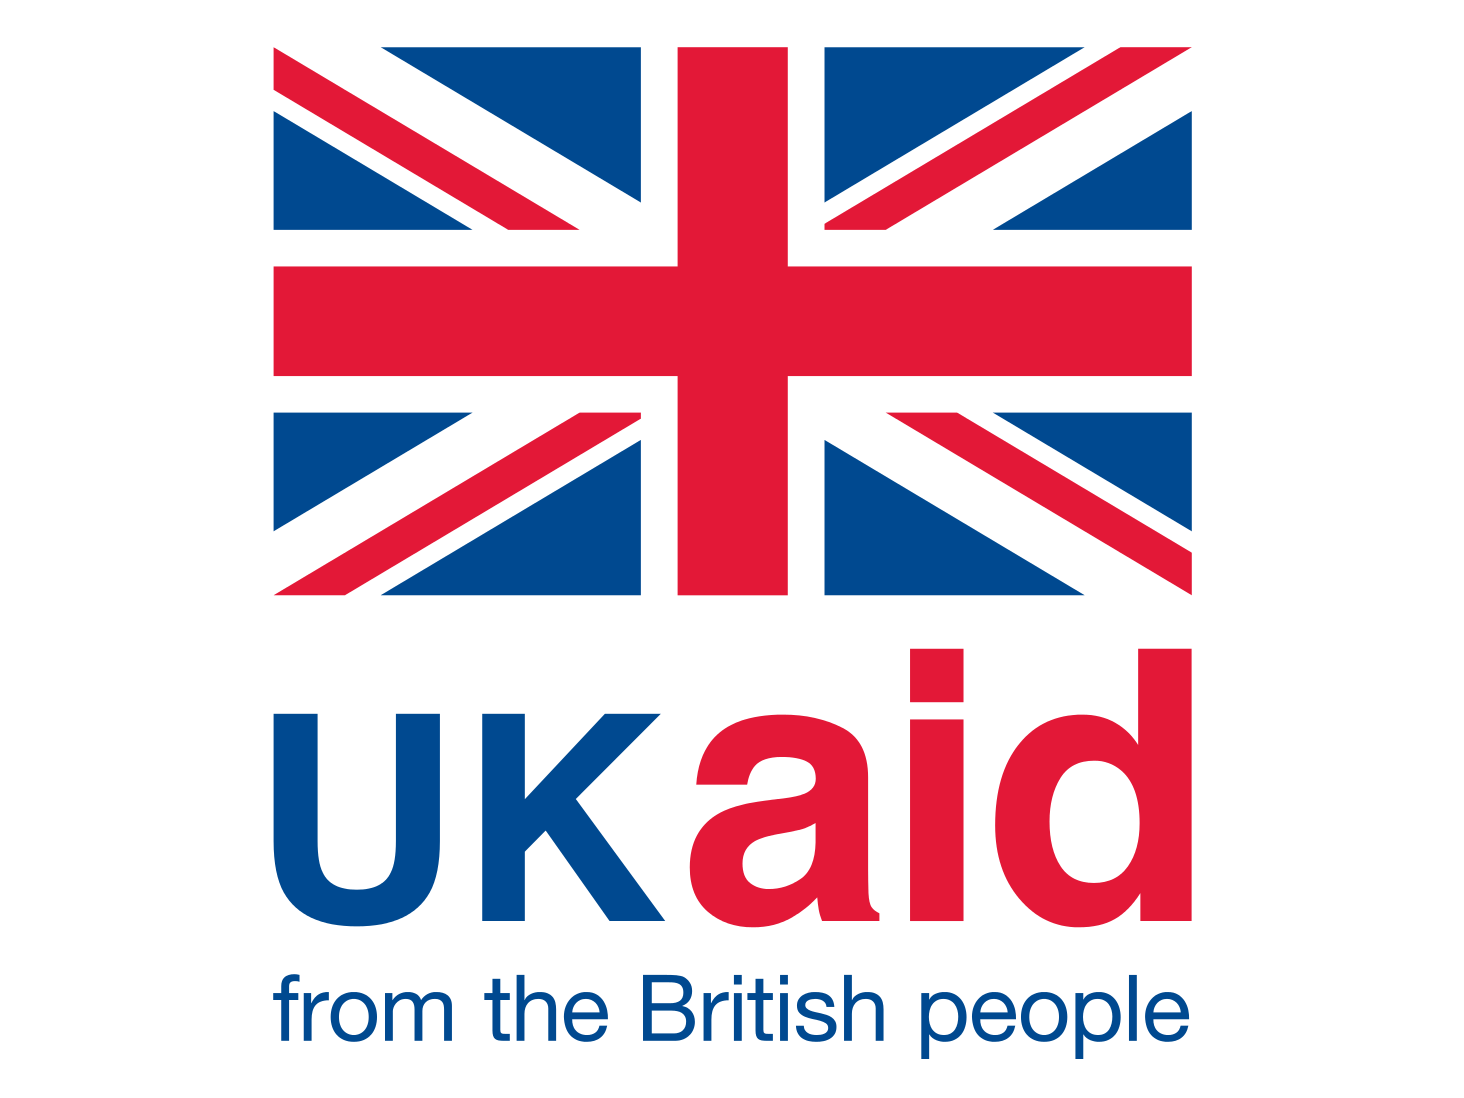 The UK Aid logo